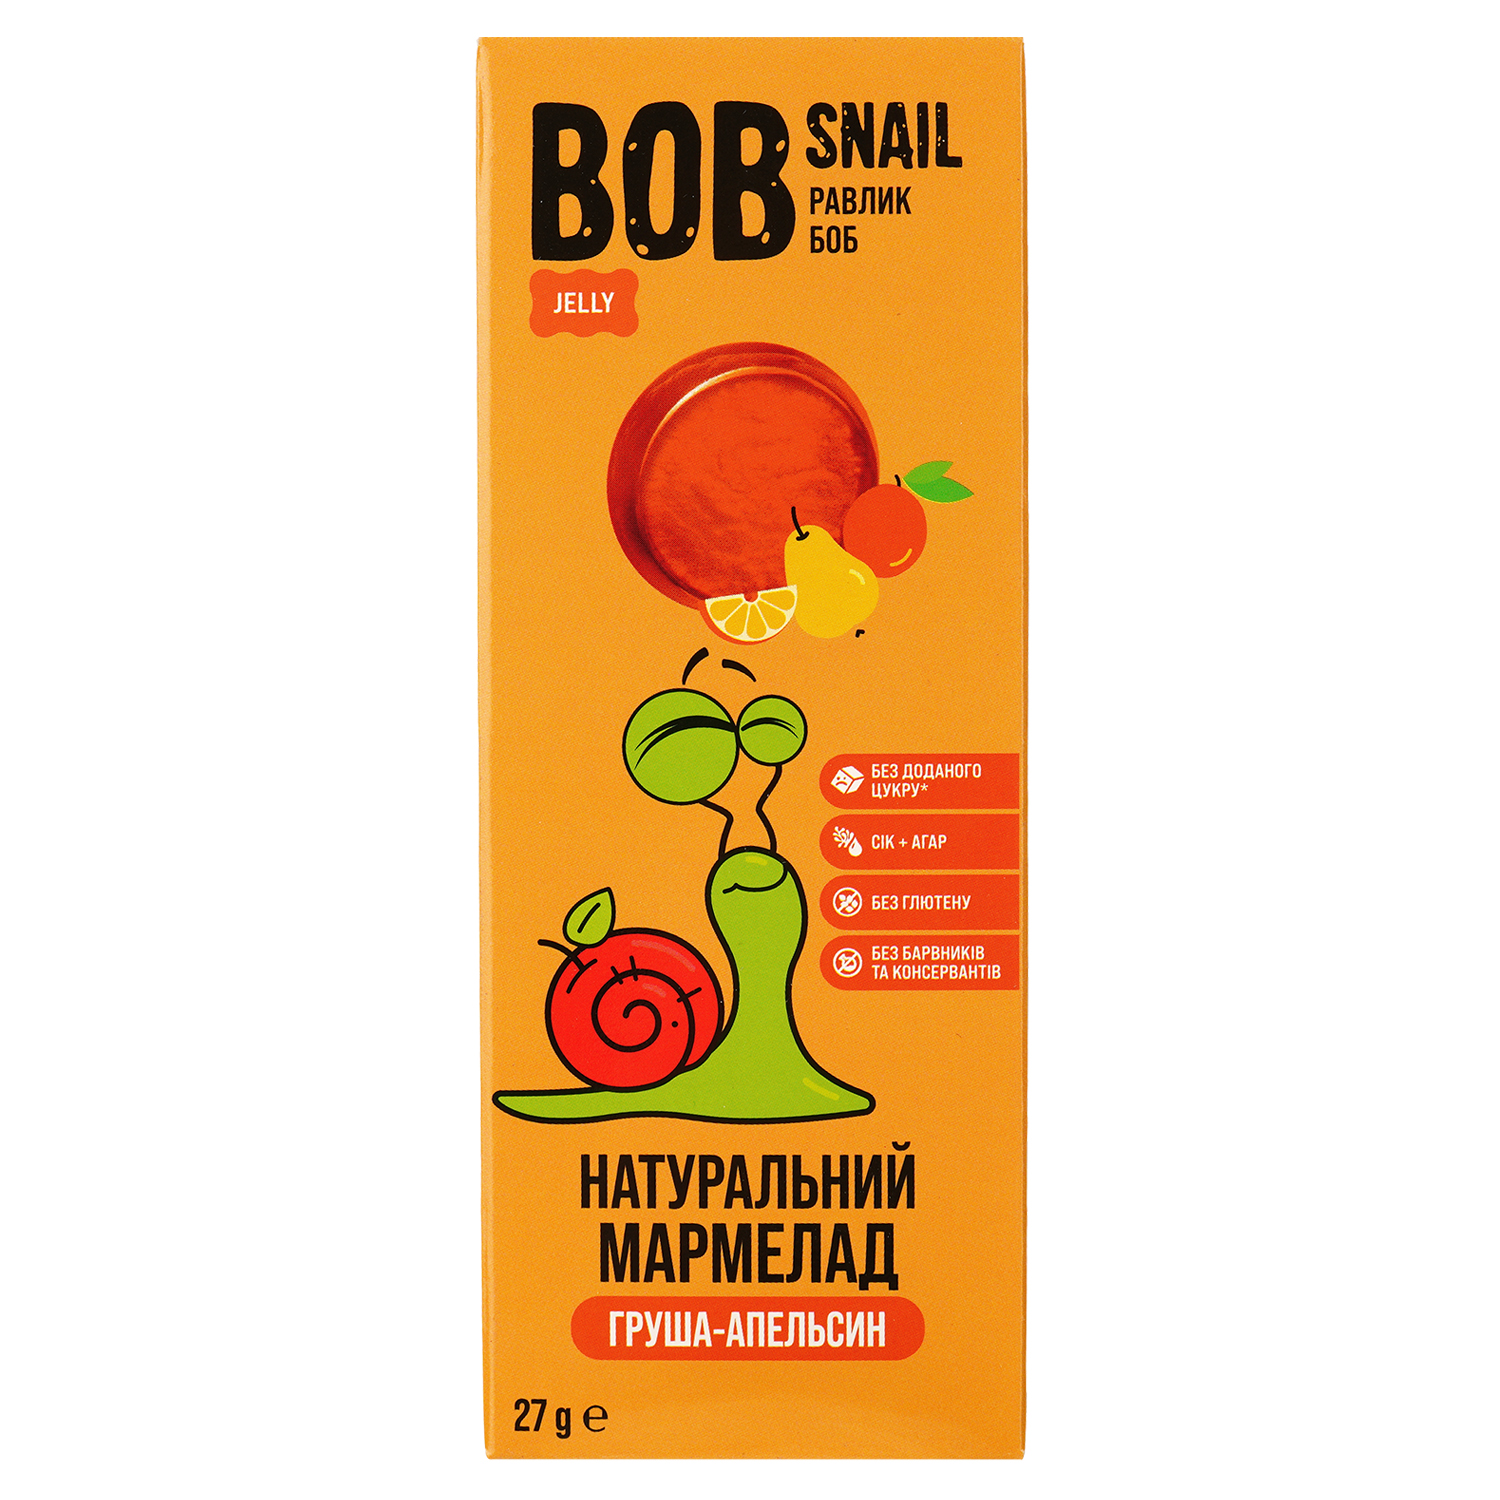 Фруктовий мармелад Bob Snail Груша-Апельсин 27 г - фото 1